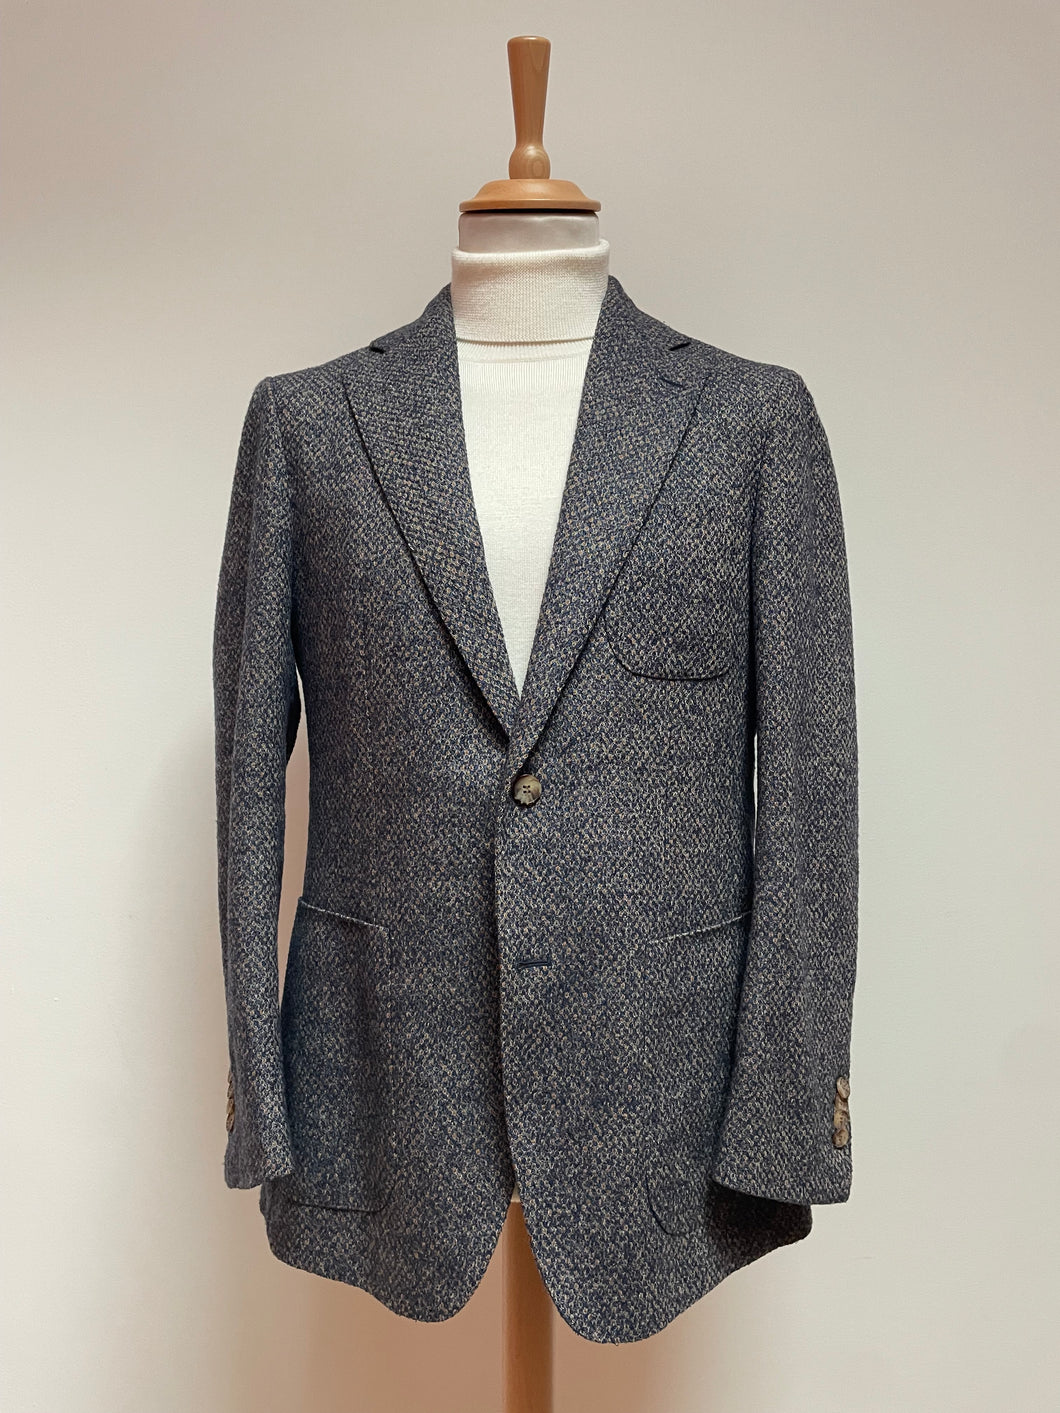 Suitsupply blazer en pure laine Ormezzano modèle Hudson 48